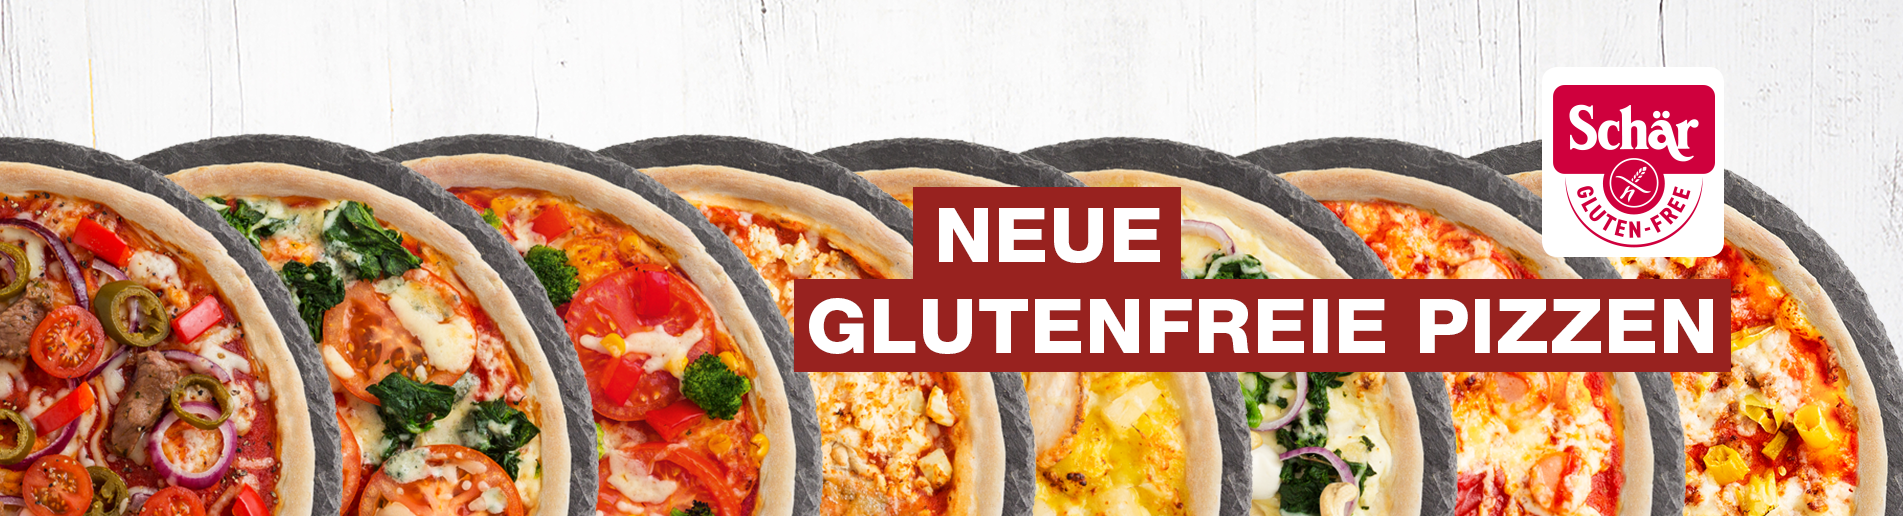 Eine Gruppe von Pizzen mit der Aufschrift „Neue glutenfreie Pizza“.